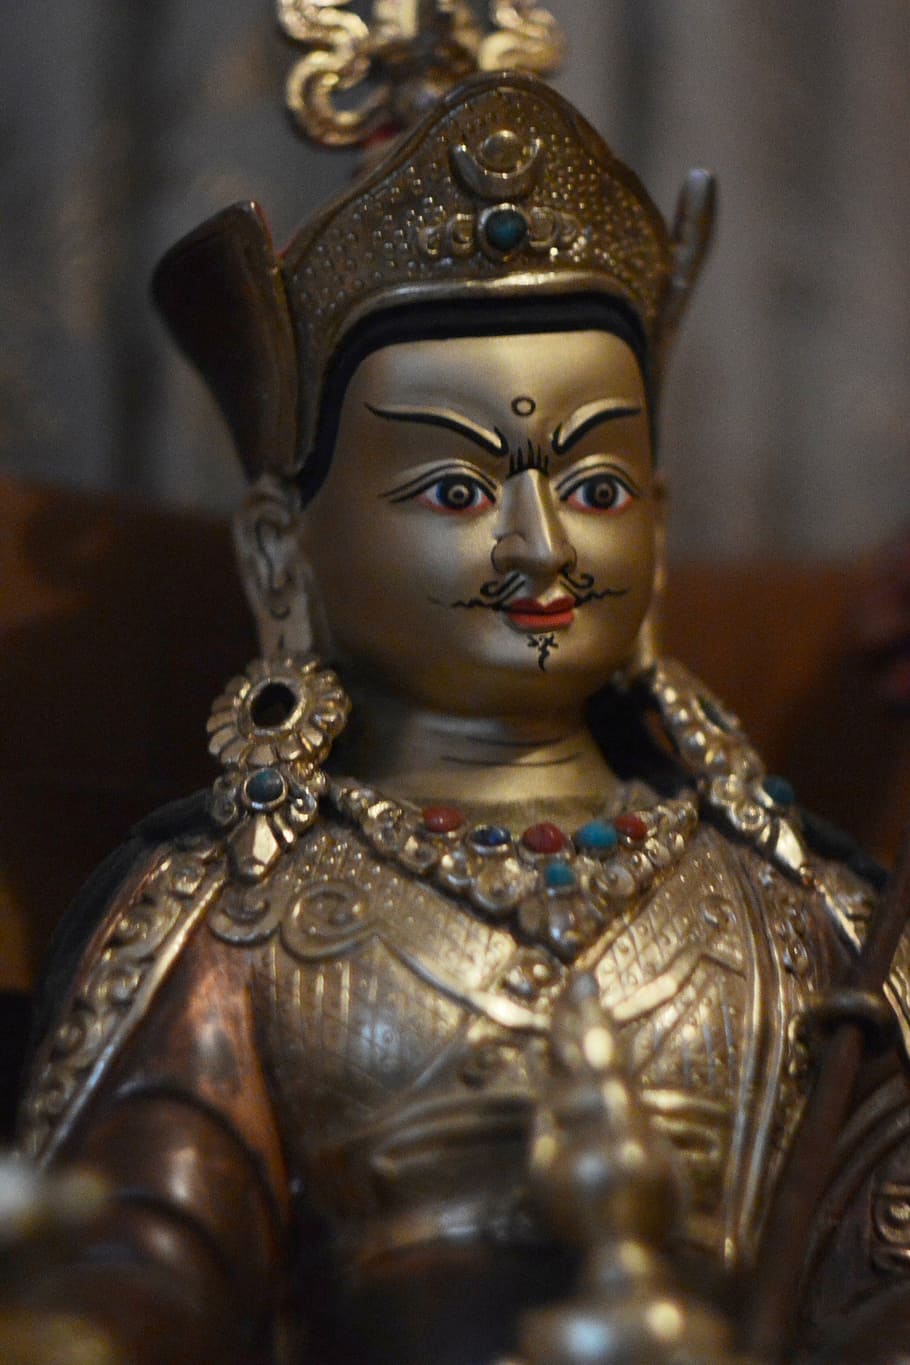 statuette, buddhism, guru padmasambhava, vajrayana, tibet, human representation, representation, art and craft, indoors, creativity